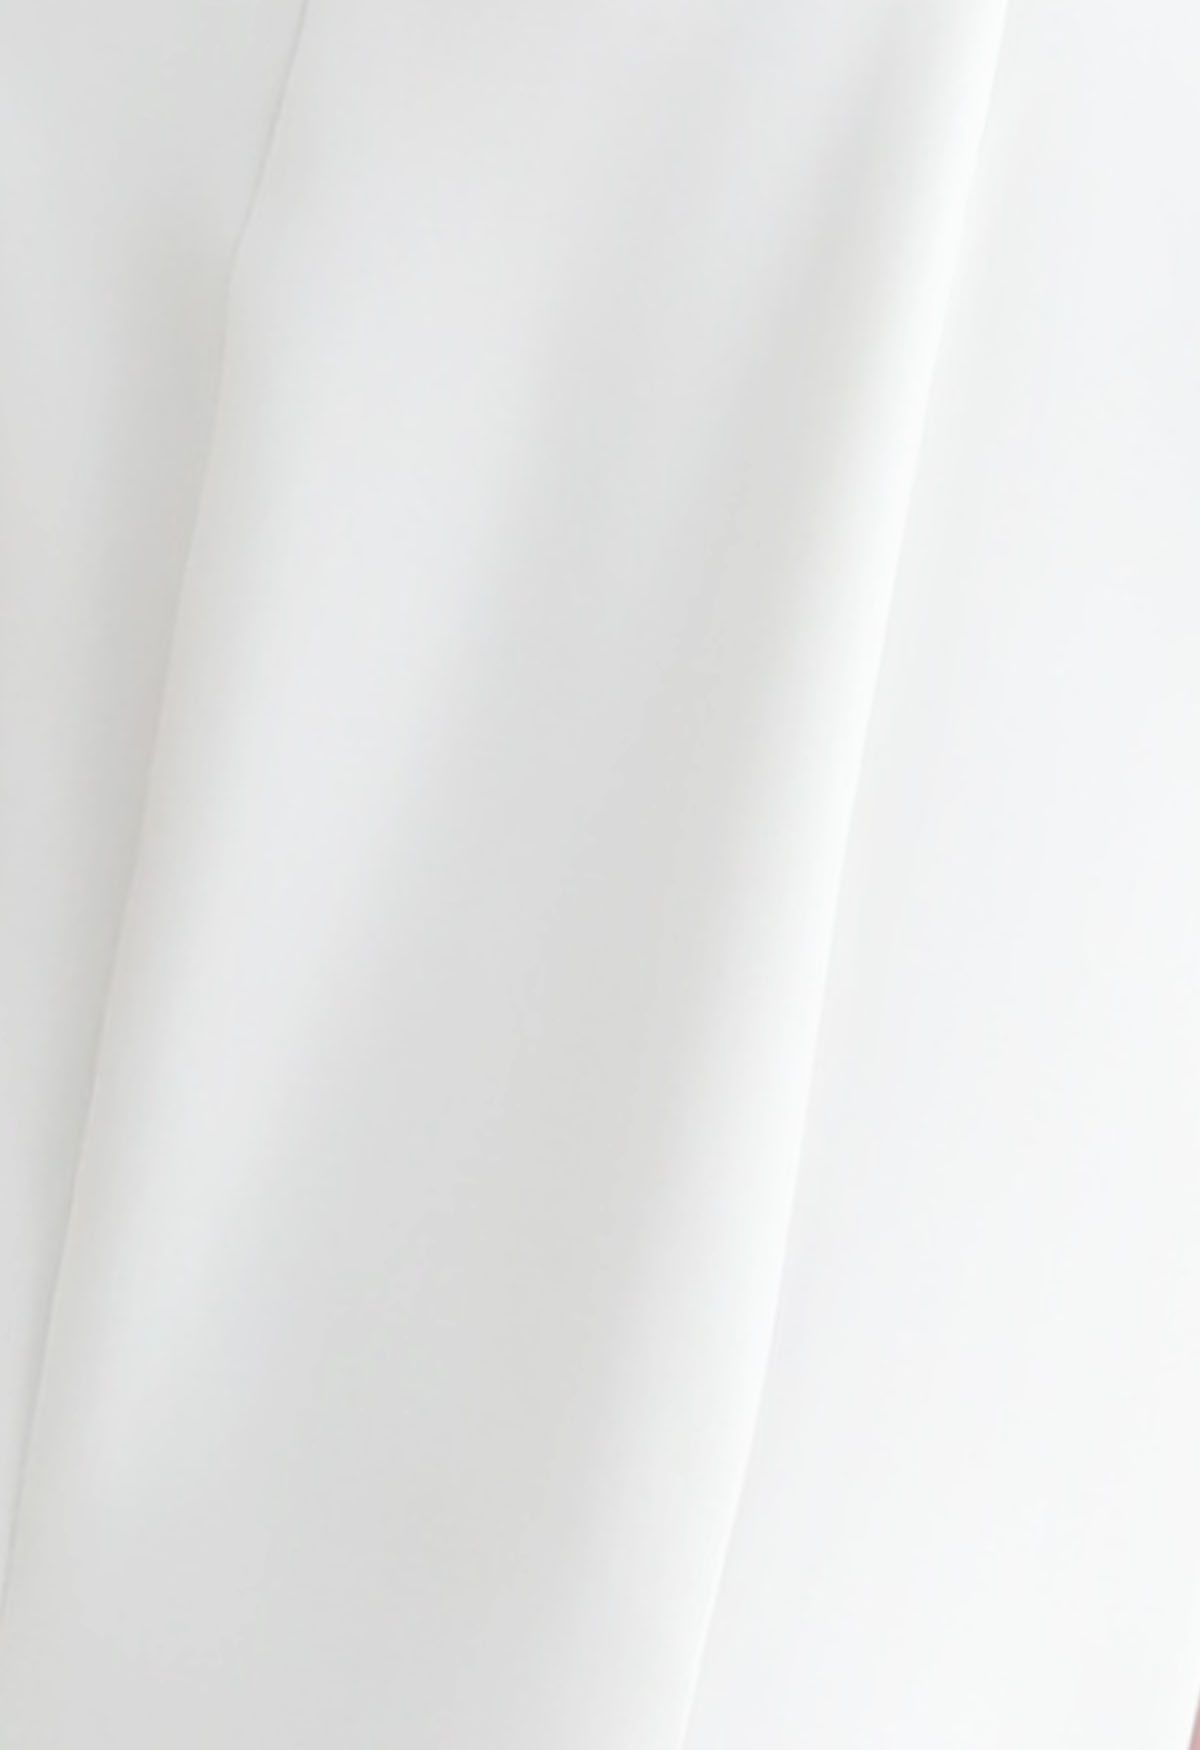 Feather Trim Neckline Slit Gown in White